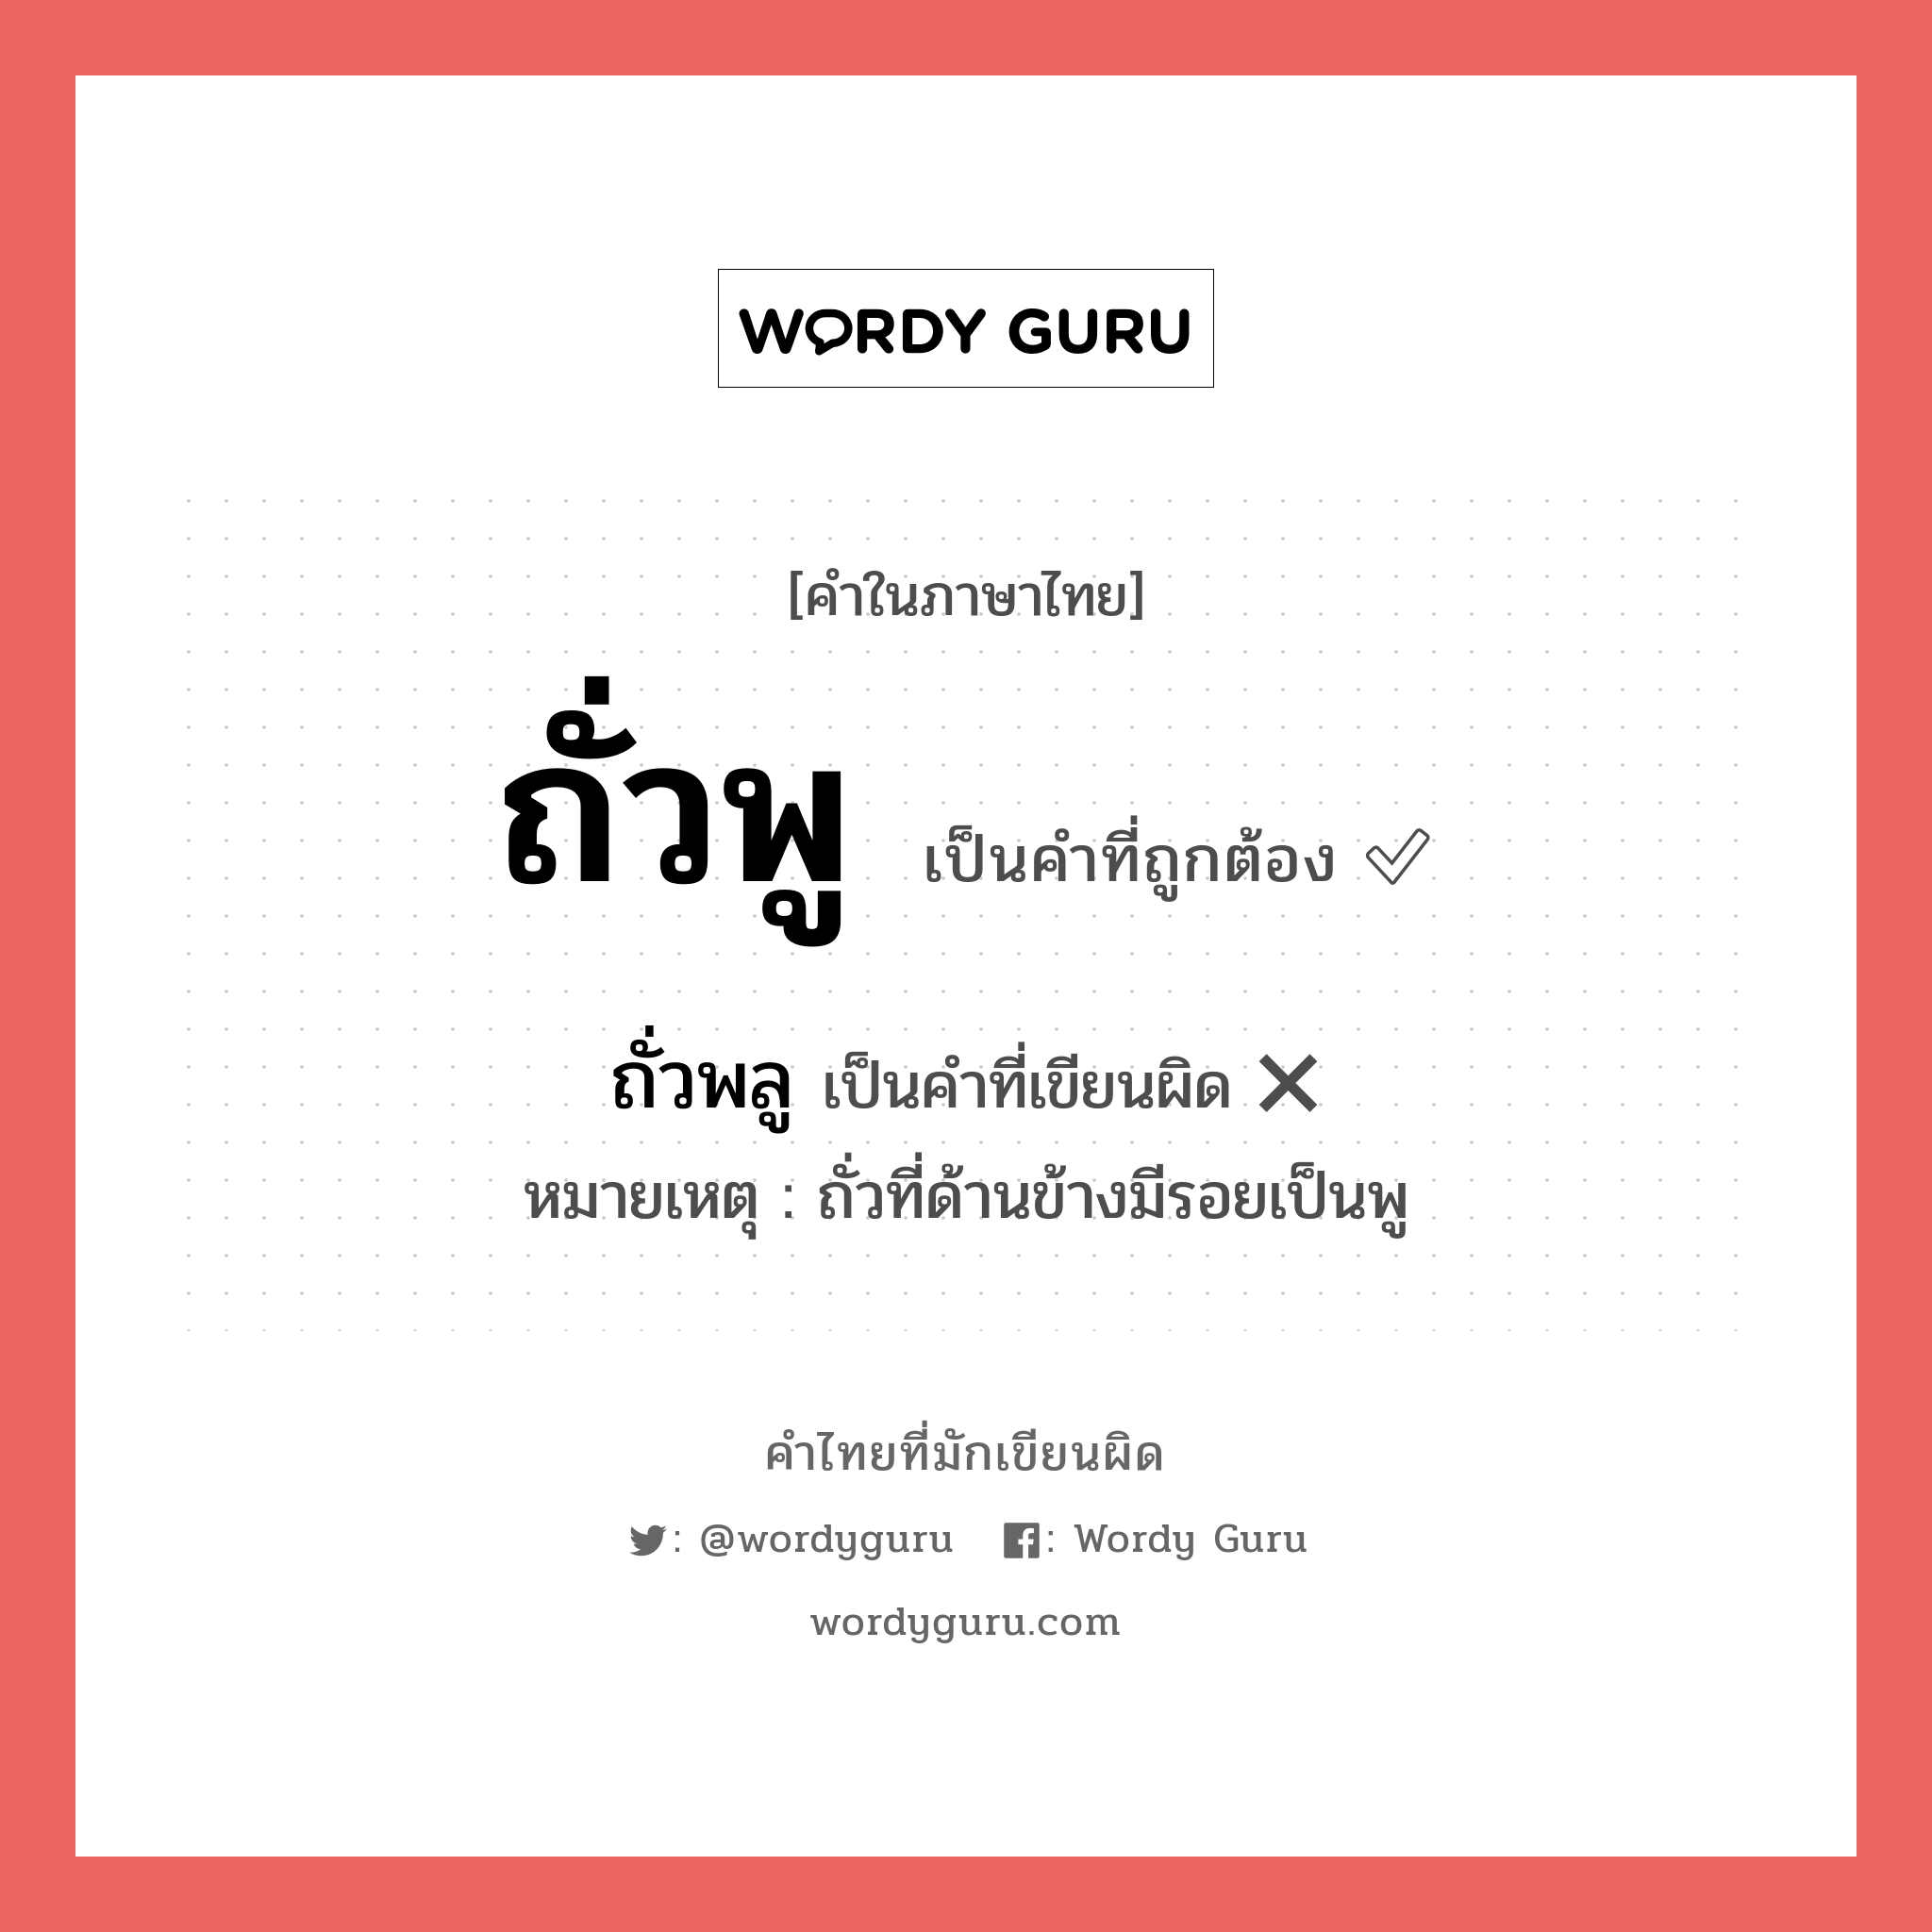 ถั่วพู หรือ ถั่วพลู คำไหนเขียนถูก?, คำในภาษาไทยที่มักเขียนผิด ถั่วพู คำที่ผิด ❌ ถั่วพลู หมายเหตุ ถั่วที่ด้านข้างมีรอยเป็นพู